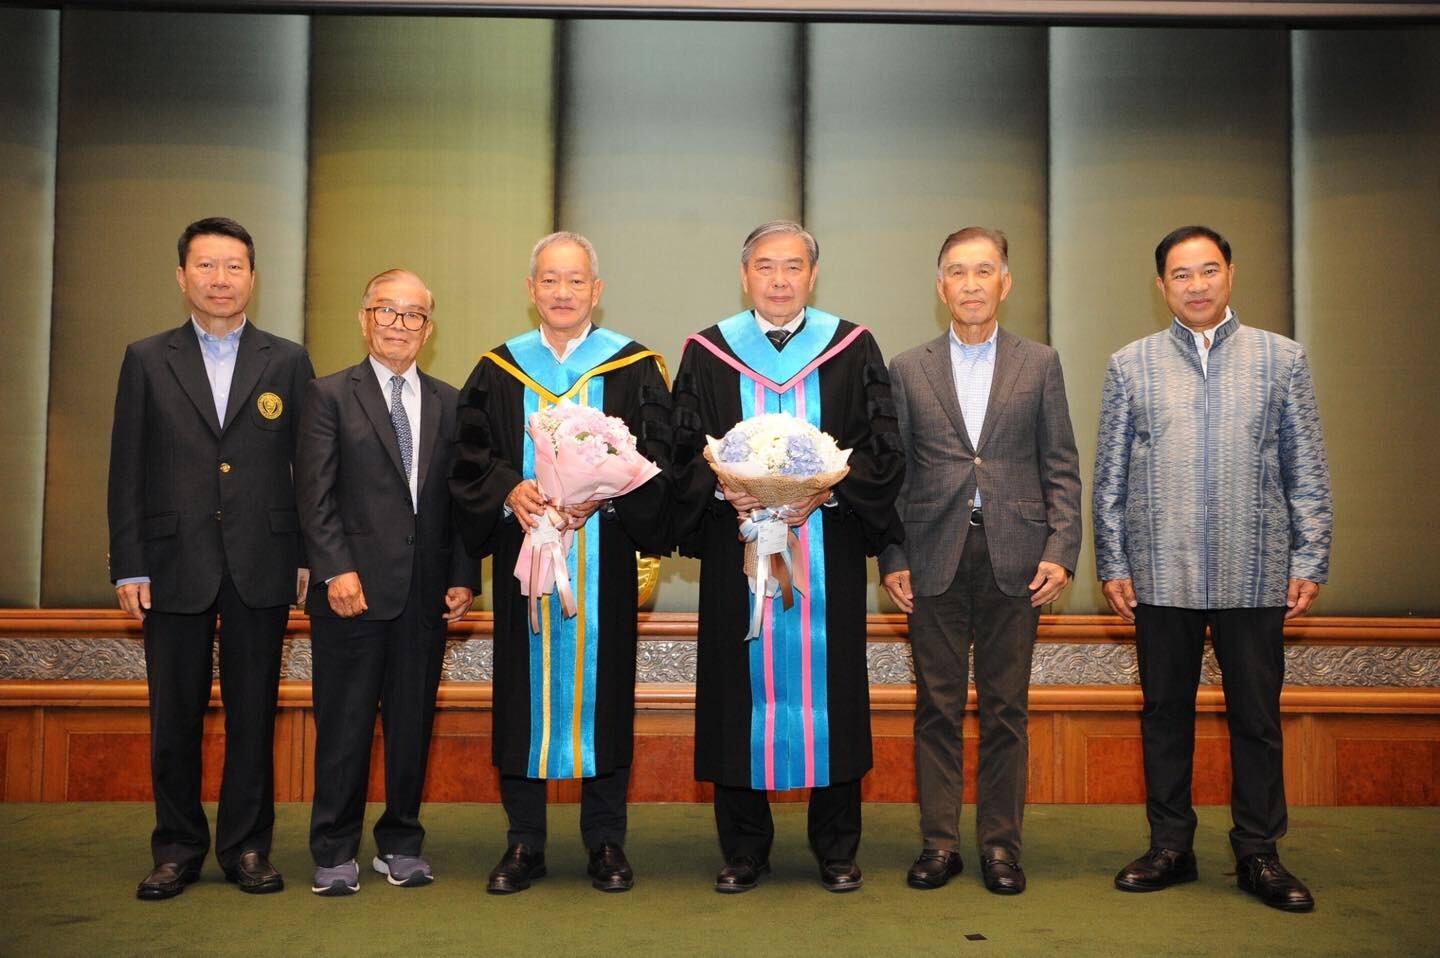 มหาวิทยาลัยหอการค้าไทย จัดงานเลี้ยงแสดงความยินดีแด่ดุษฎีบัณฑิตกิตติมศักดิ์ มหาวิทยาลัยหอการค้าไทย ประจำปีการศึกษา 2564